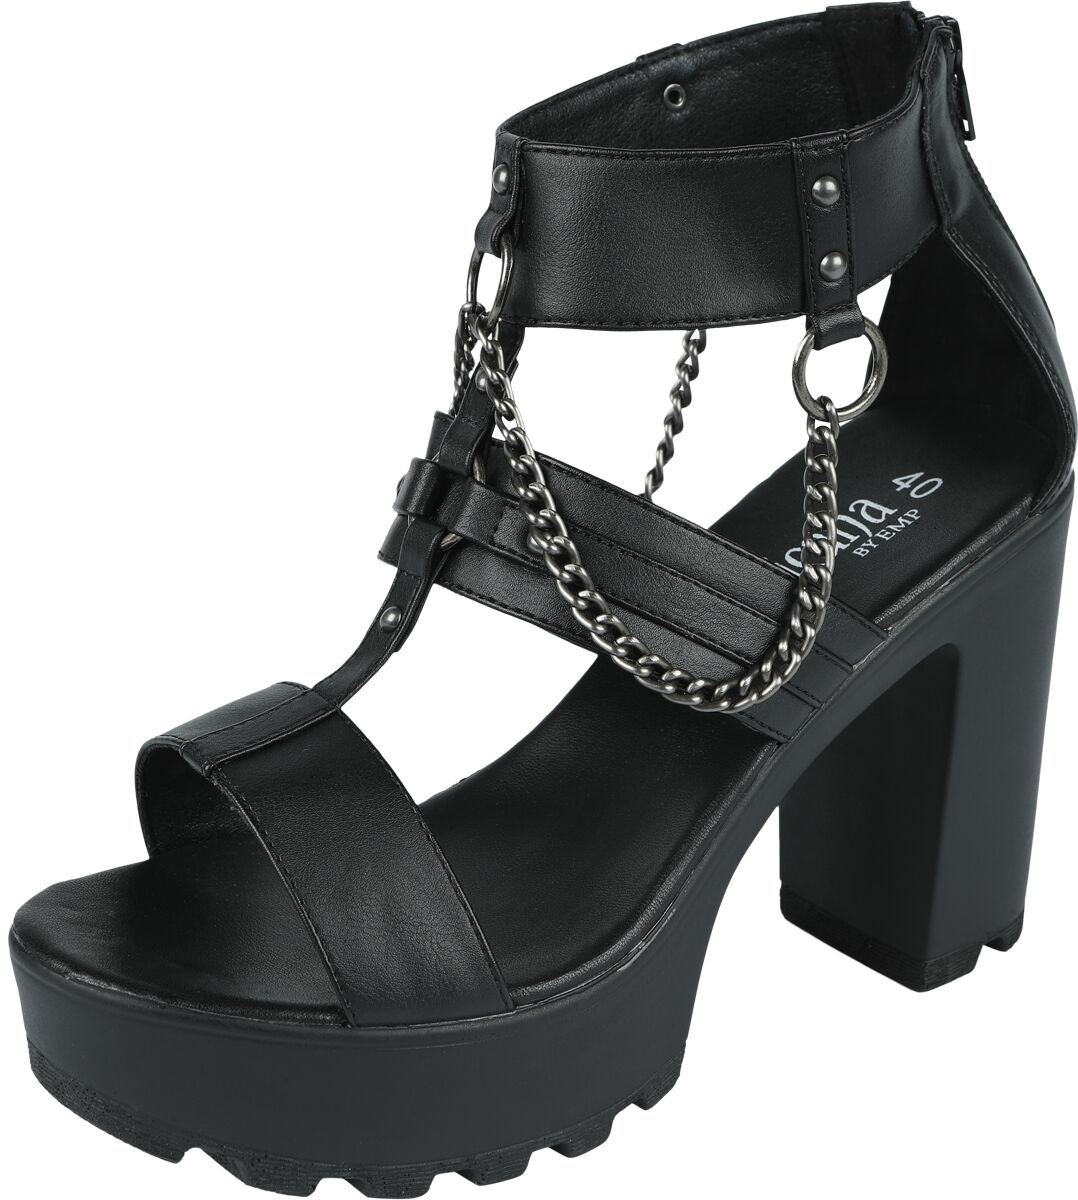 Gothicana by EMP - Gothic High Heel - High Heels With Chains And Rivets - EU37 bis EU41 - für Damen - Größe EU39 - schwarz